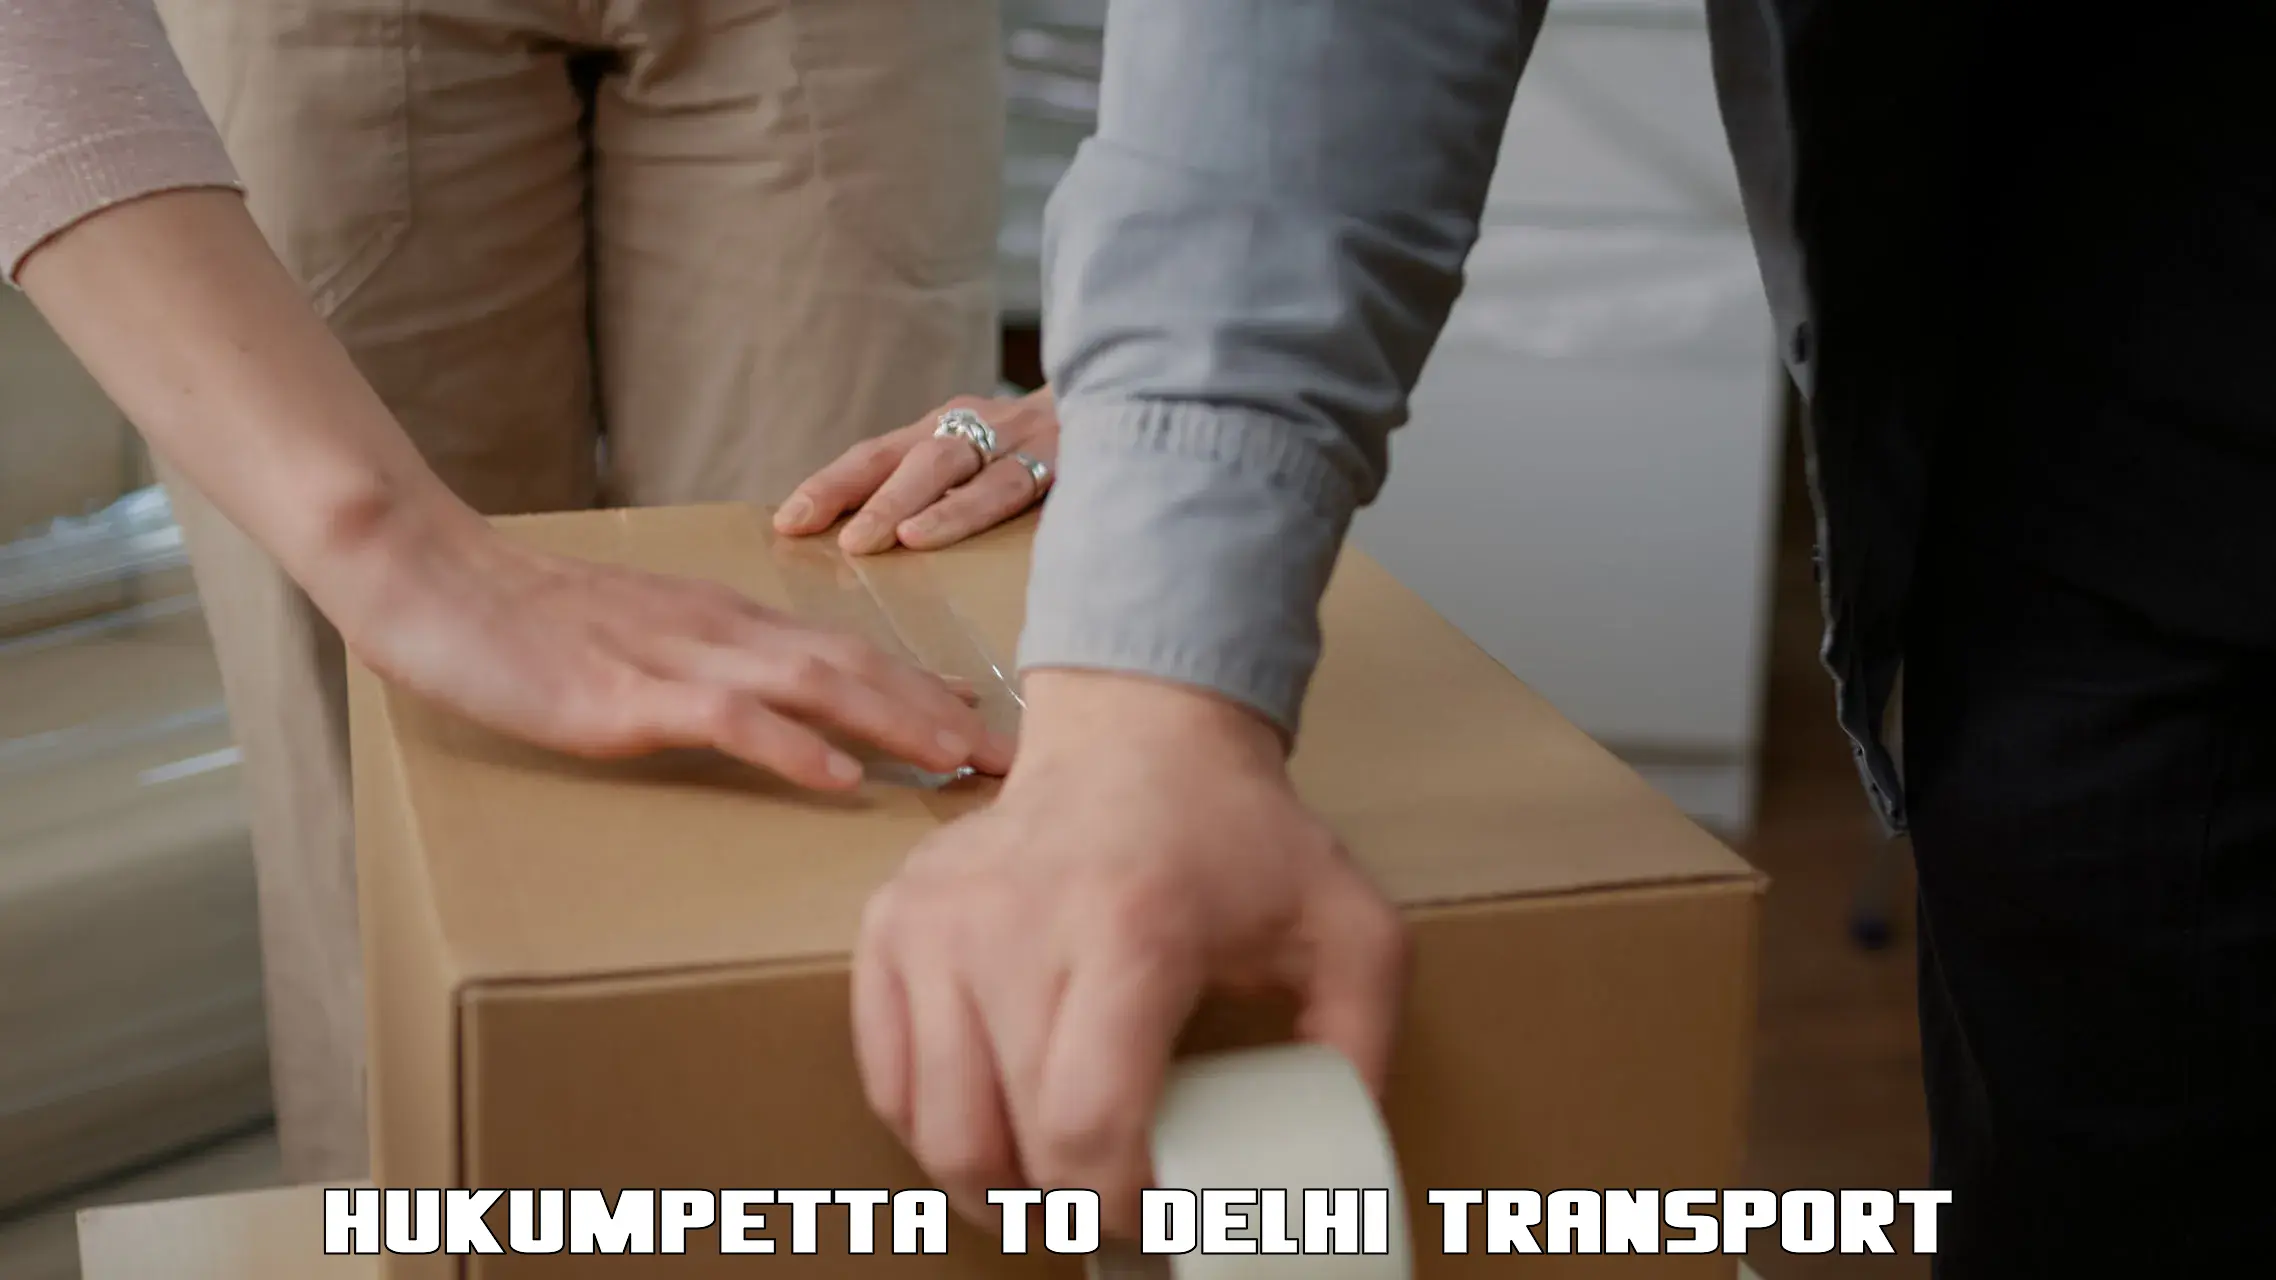 Daily transport service Hukumpetta to Delhi